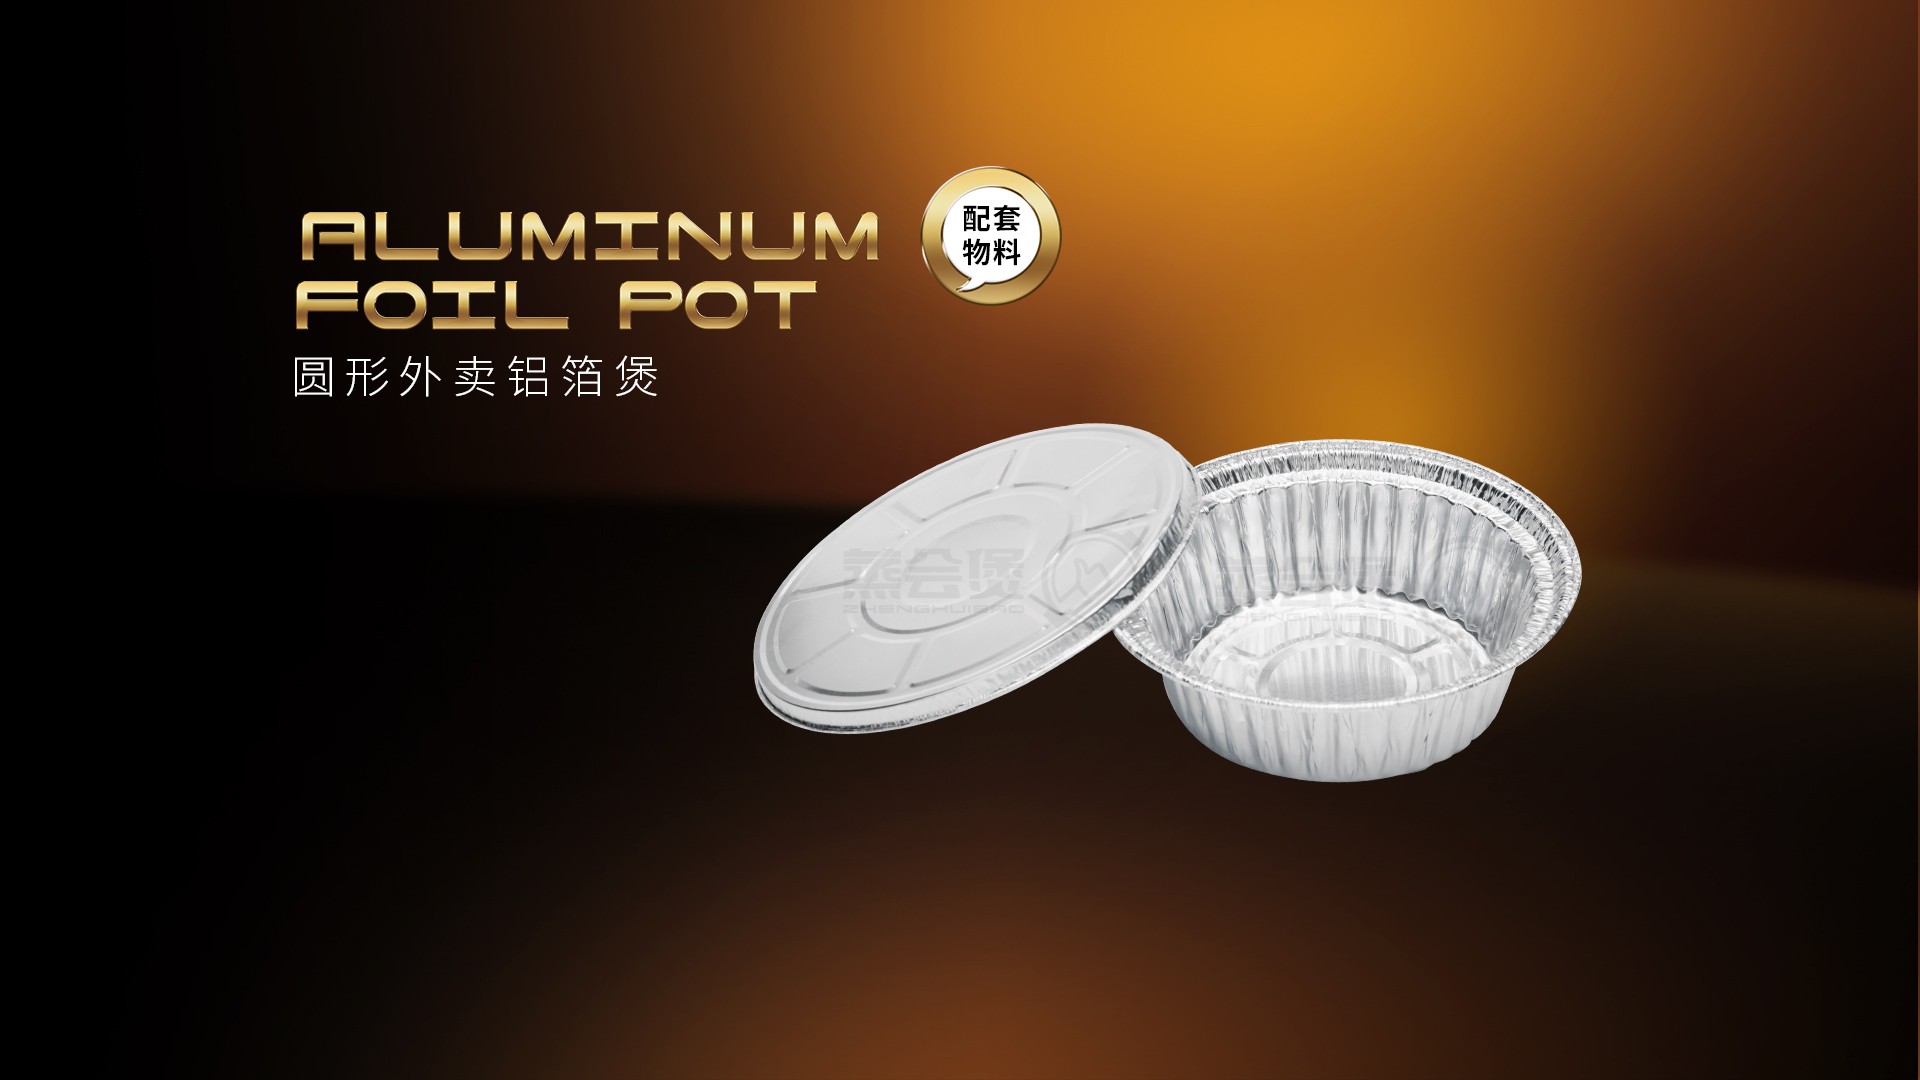 zhenghuibao_supporing_materials_aluminum-foil-pot_details_page.jpg